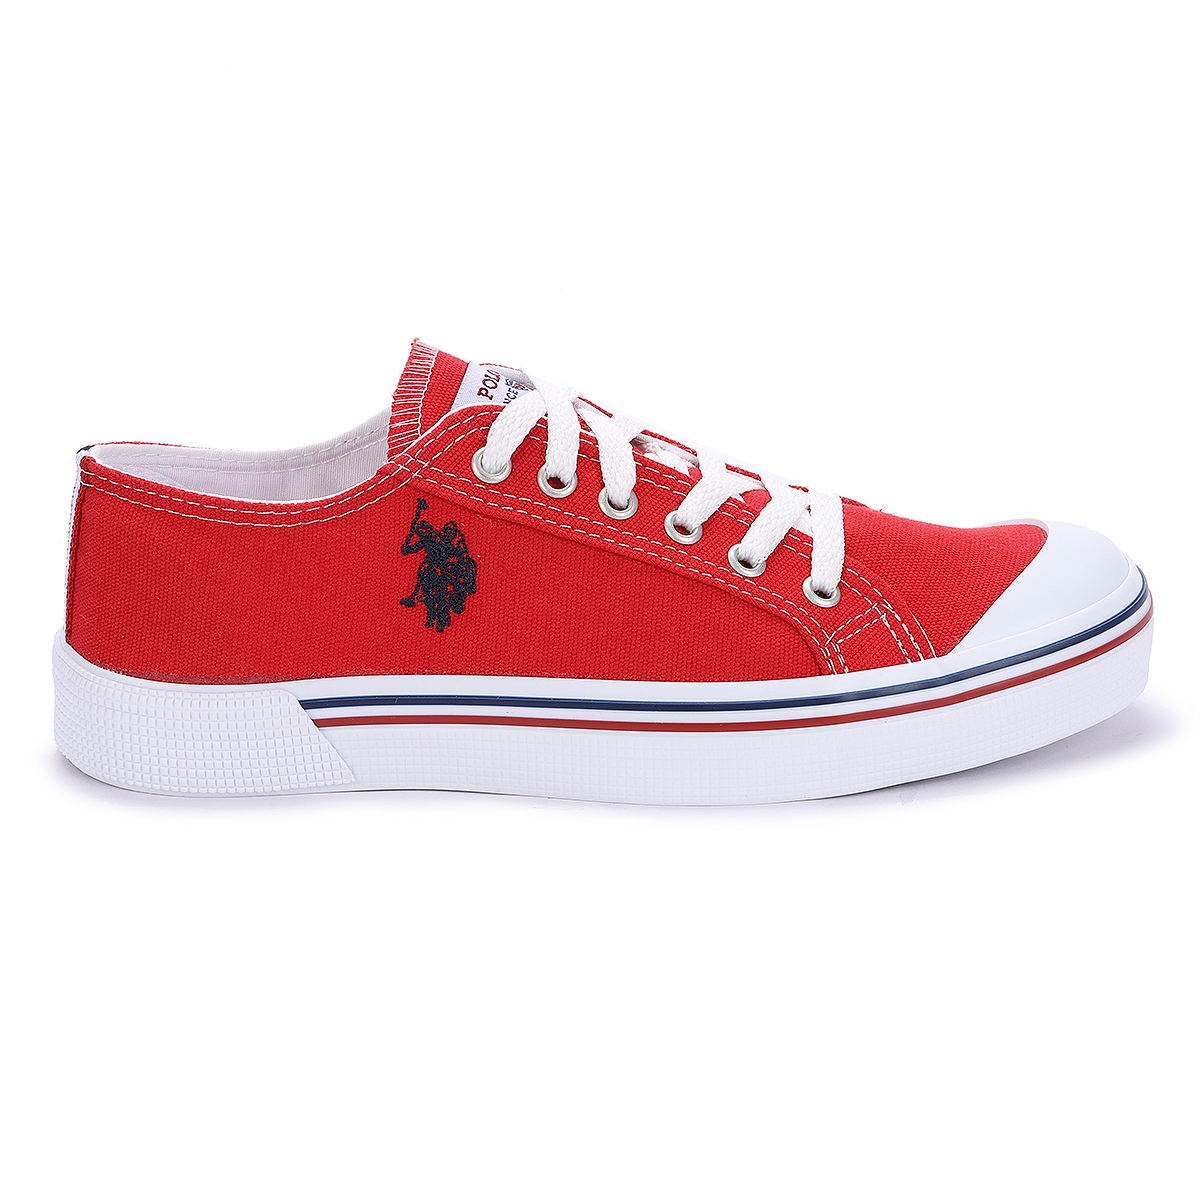 Flo Penelope Günlük Yürüyüş Bayan Spor Ayakkabı Kırmızı. 6